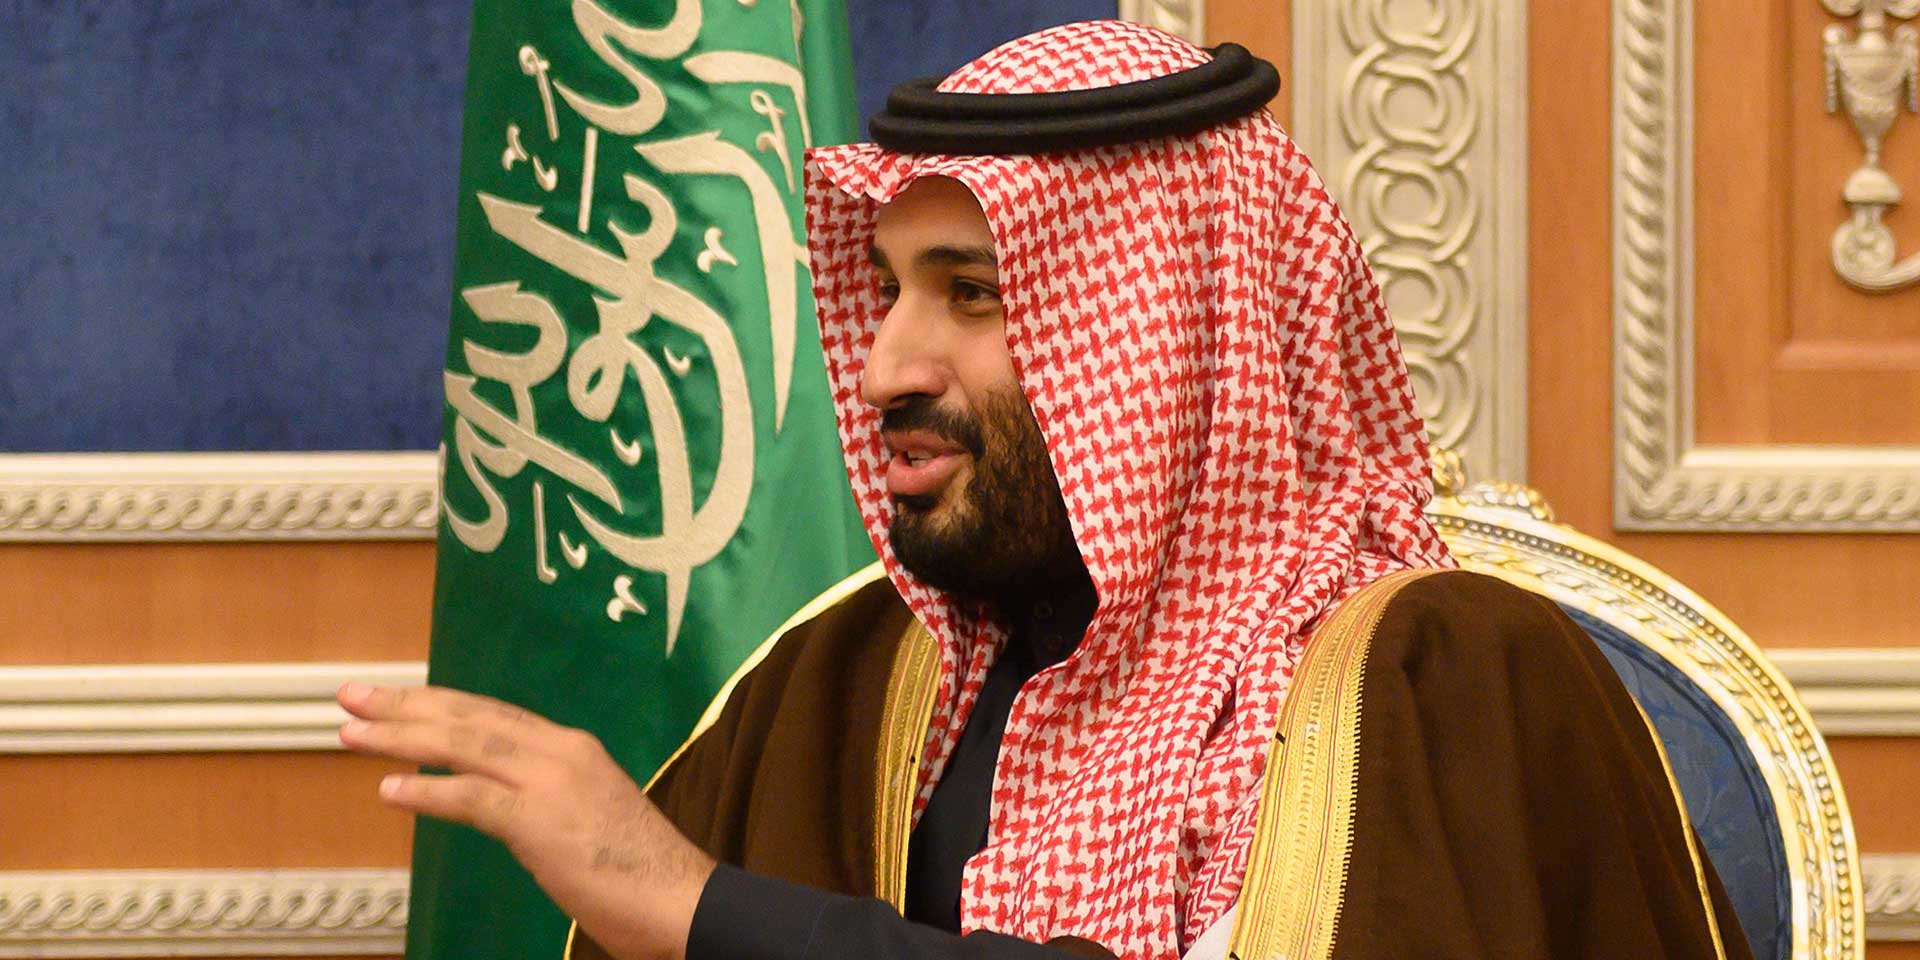 El príncipe heredero saudí dijo que usaría "una bala" contra Khashoggi